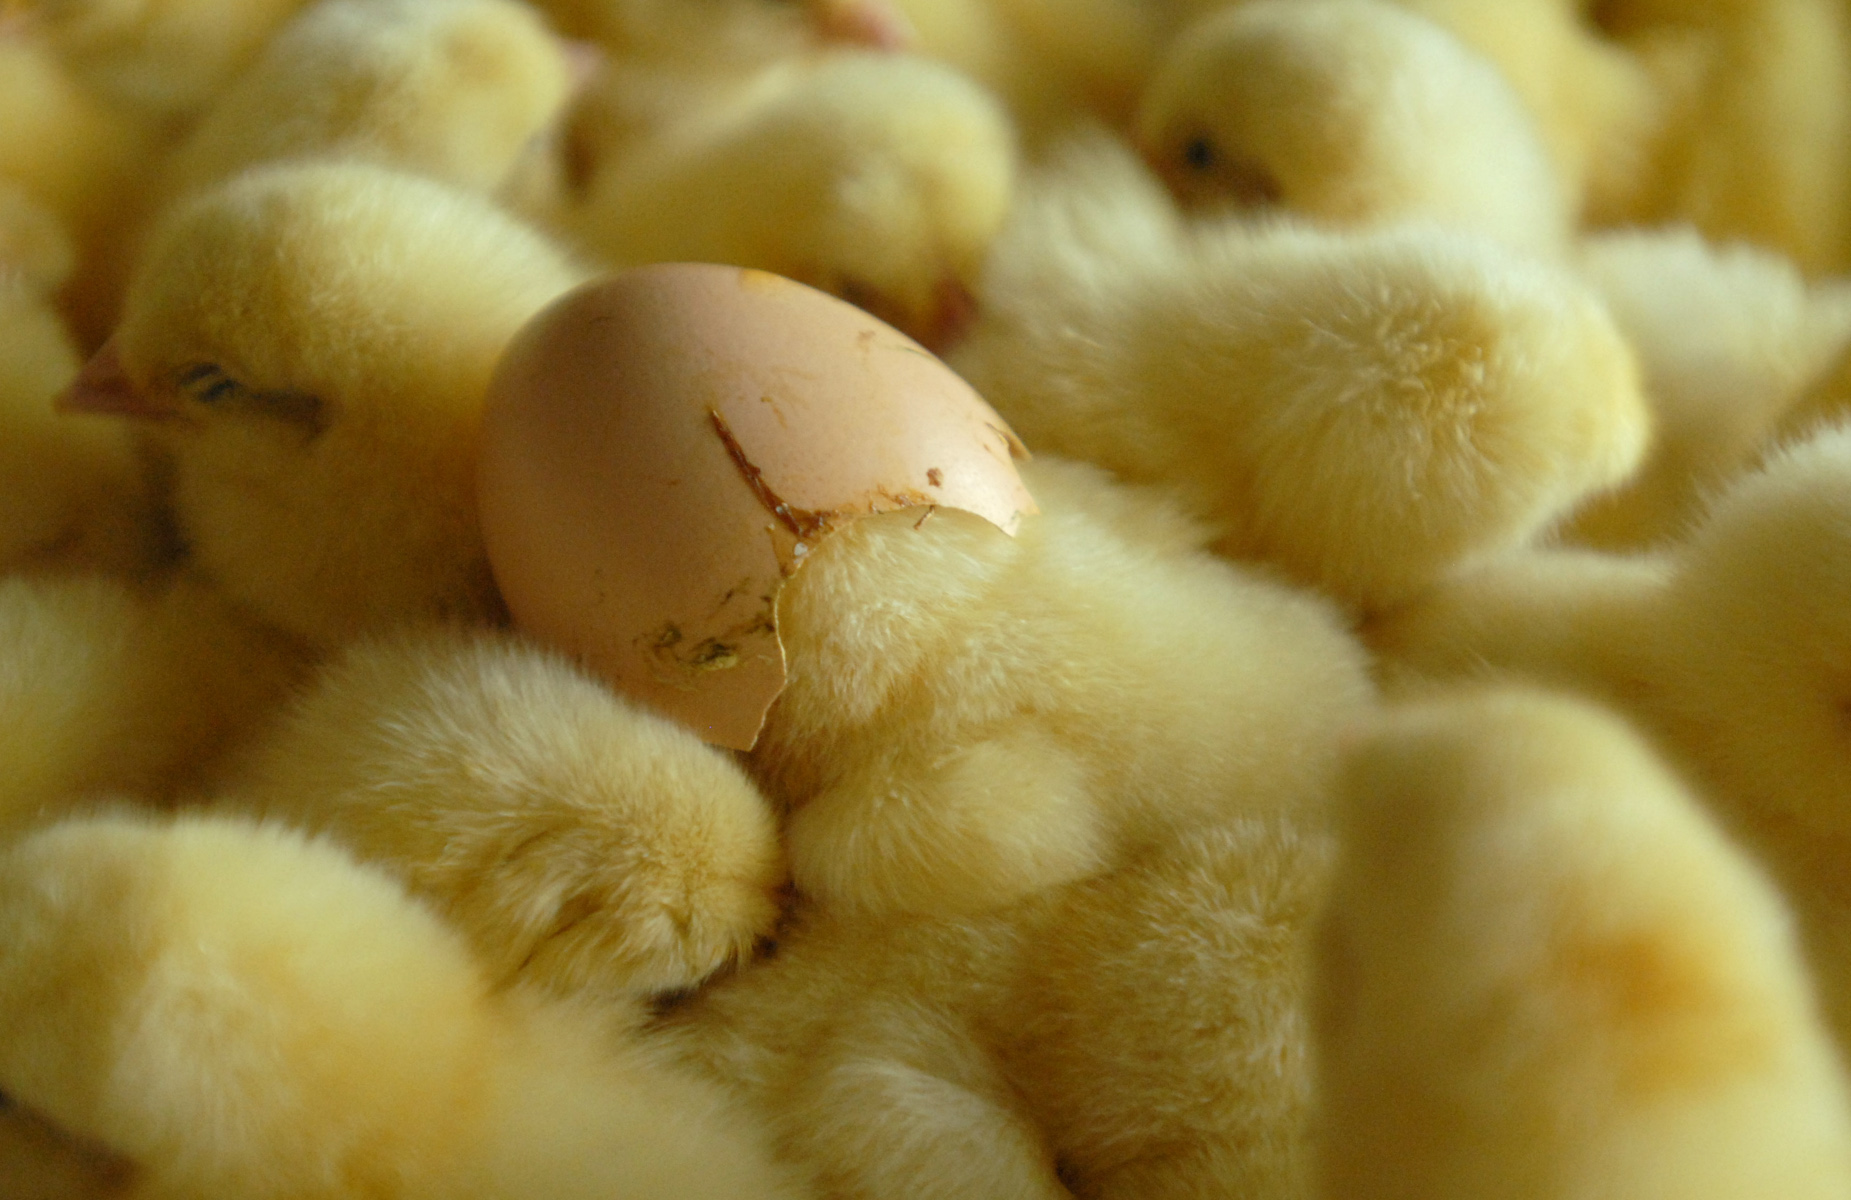 Jeden z kurczaków włożył głowę z powrotem do skorupki jajka w zakładzie wylęgu drobiu w Redzie.